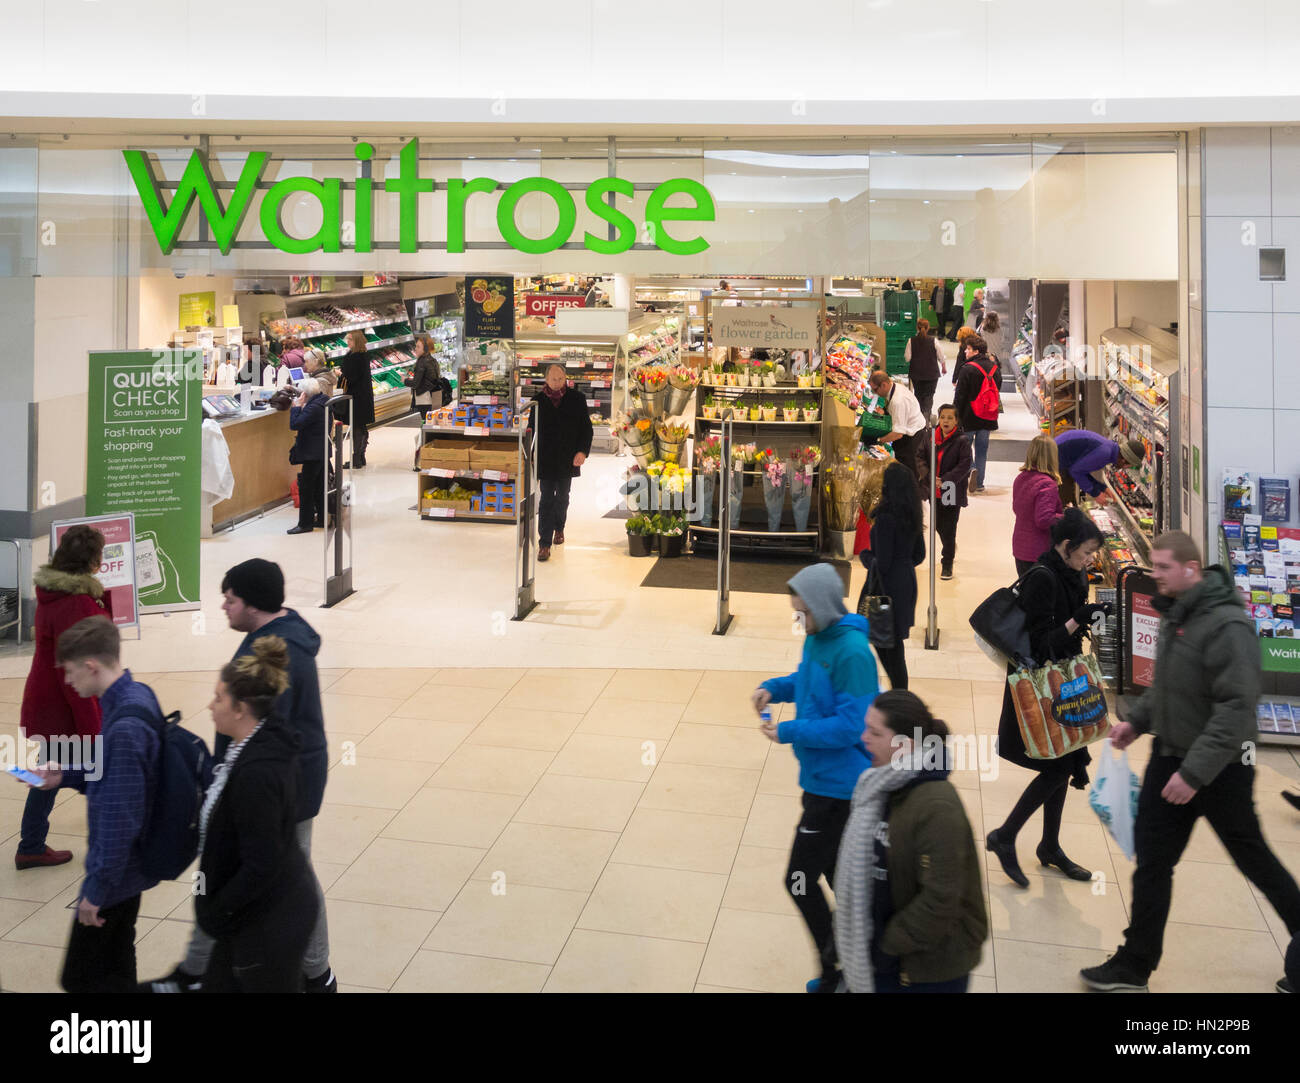 Supermarché Waitrose dans le centre commercial Eldon Square. Newcastle Upon Tyne, Angleterre. United Kingdom Banque D'Images